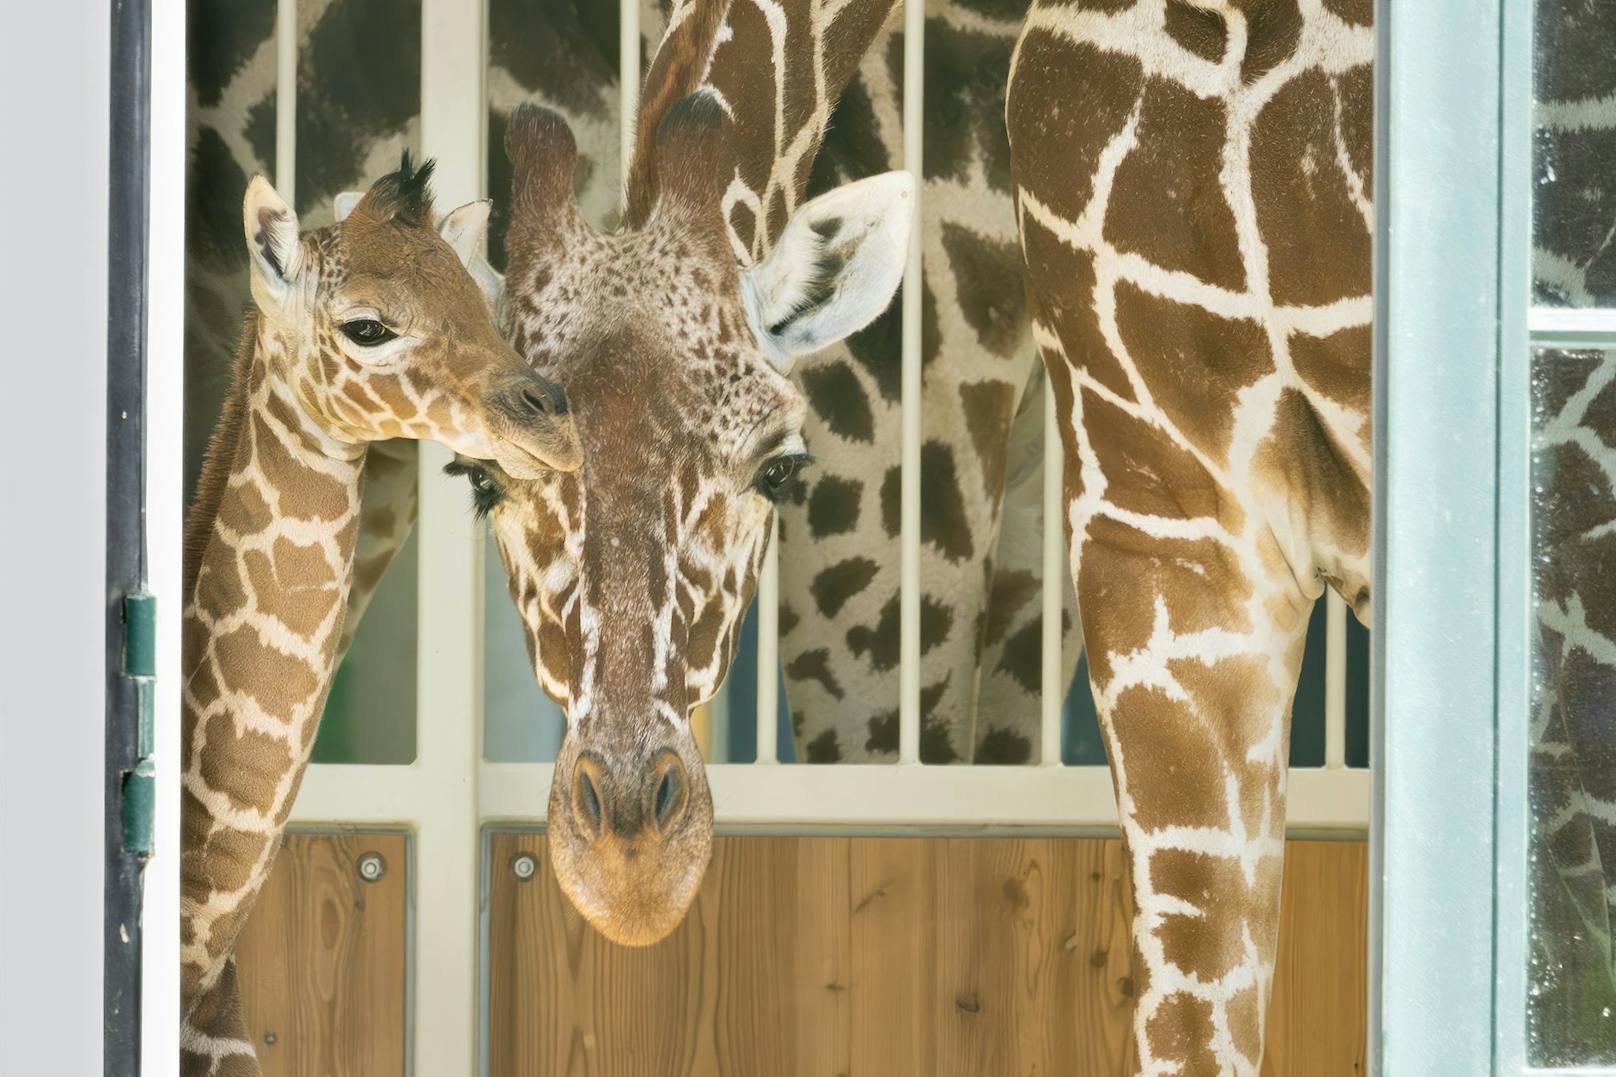 Eineinhalb Jahre nach dem letzten Zuchterfolg brachte eine Giraffenkuh nun ihr zweites Kalb zur Welt.